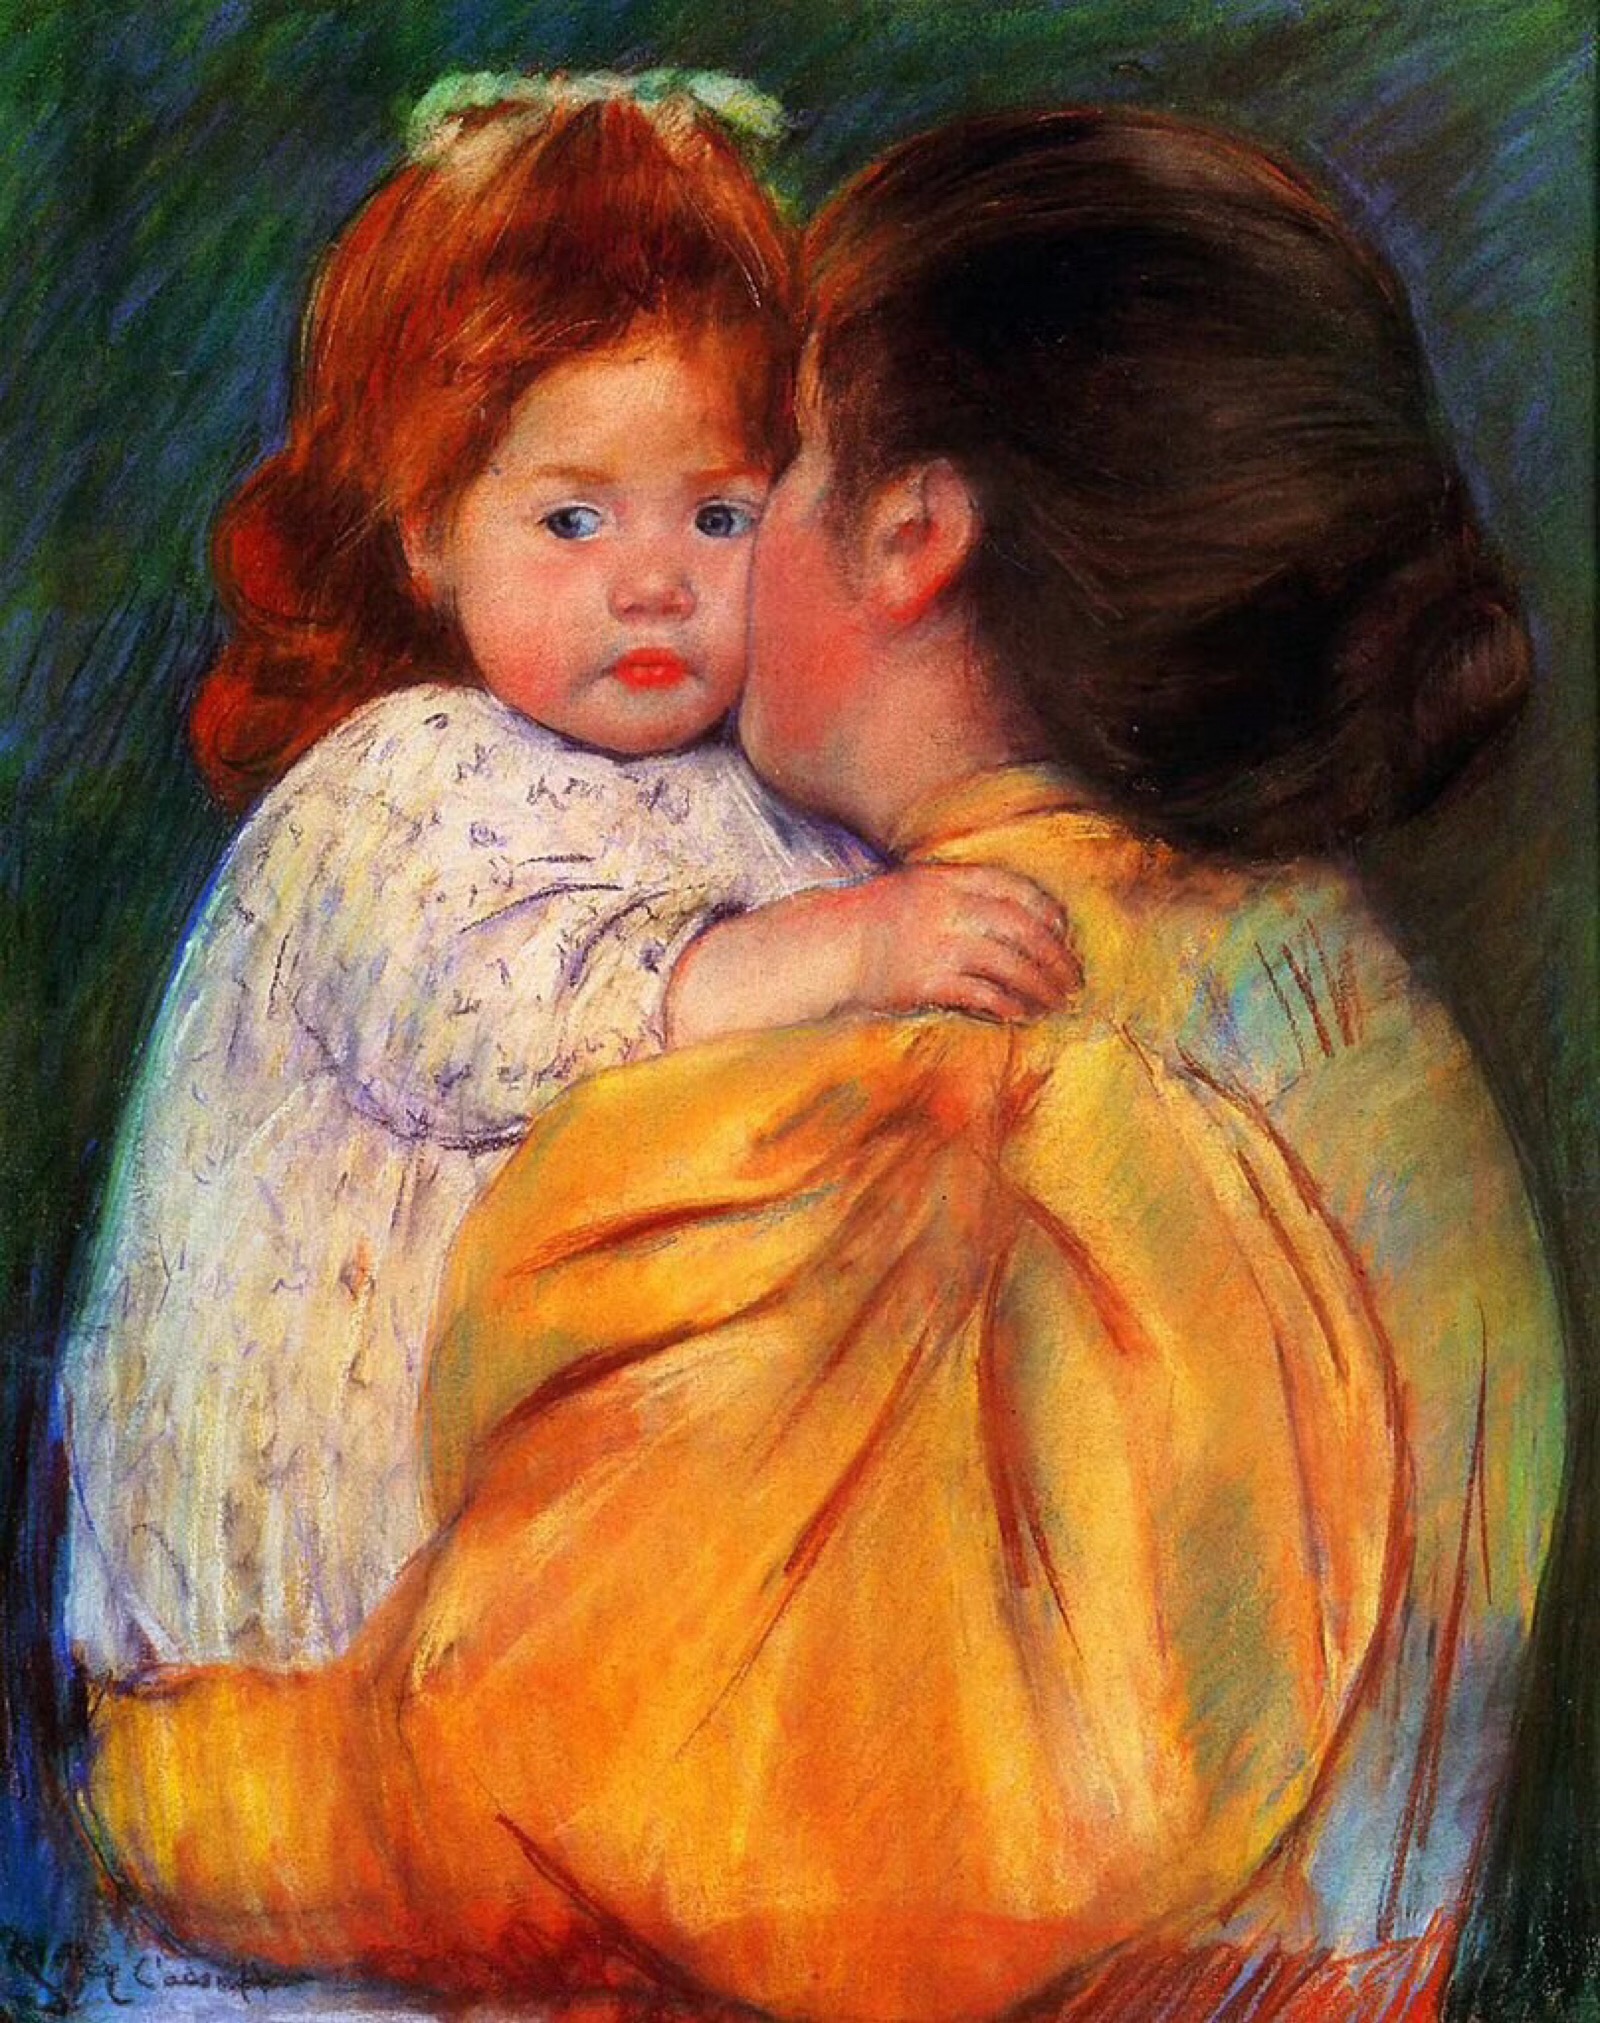 在印象派著名艺术家中,玛丽·卡萨特是为数不多的一位女性,她刻画母子